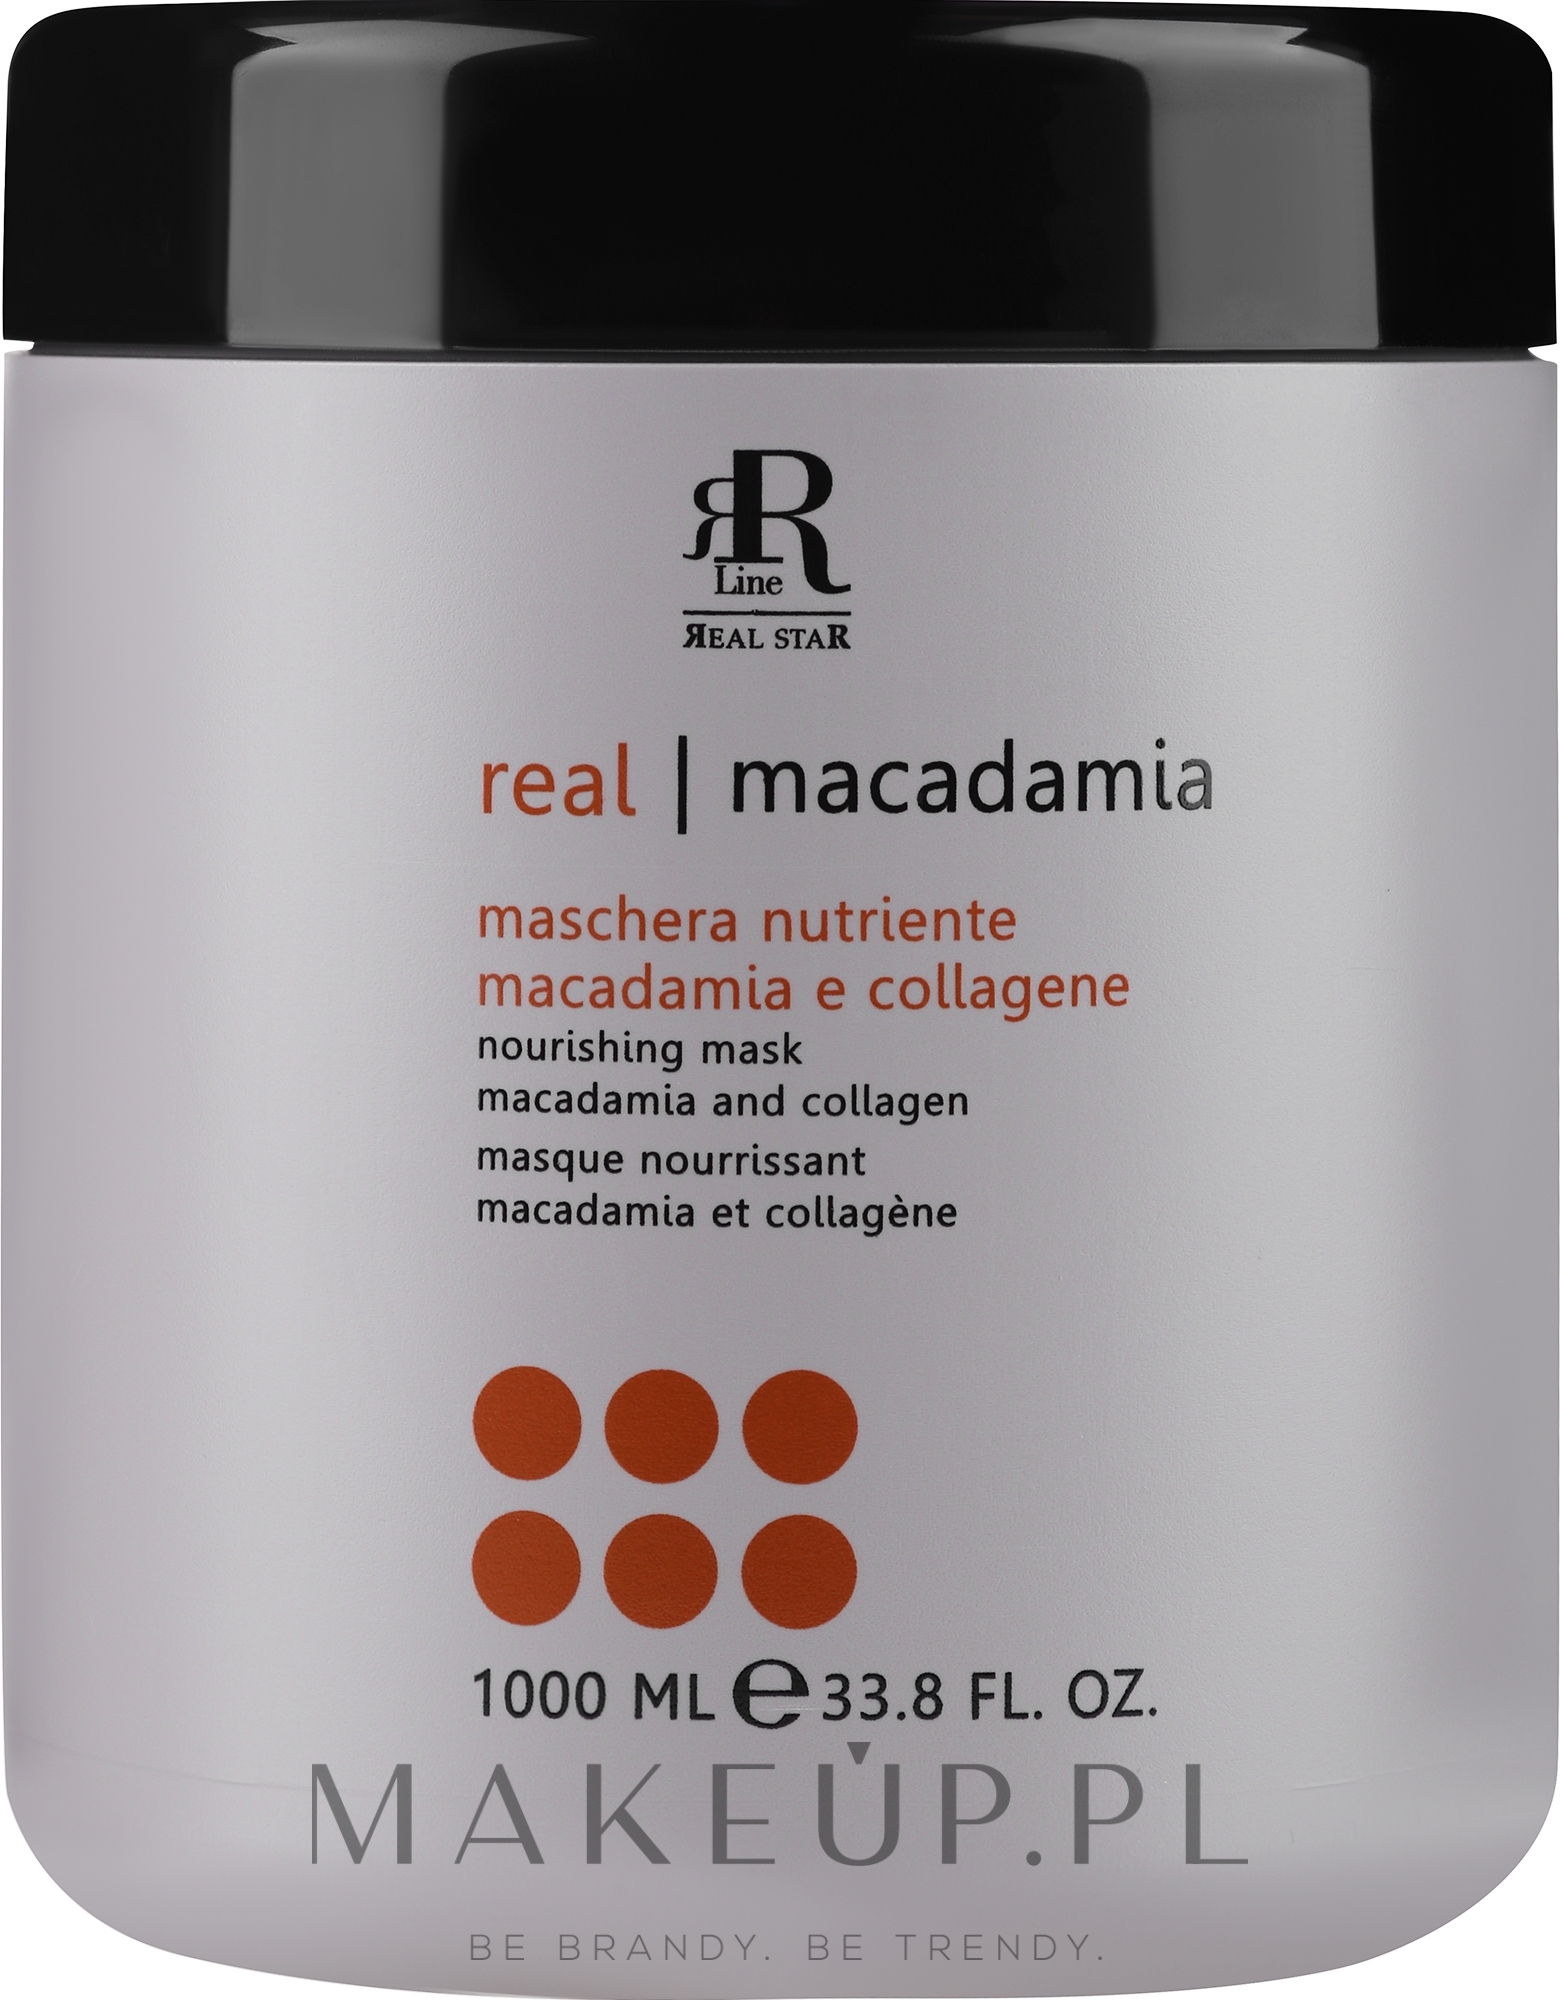 Maska do włosów z olejem makadamia - RR Line Macadamia Star — Zdjęcie 1000 ml